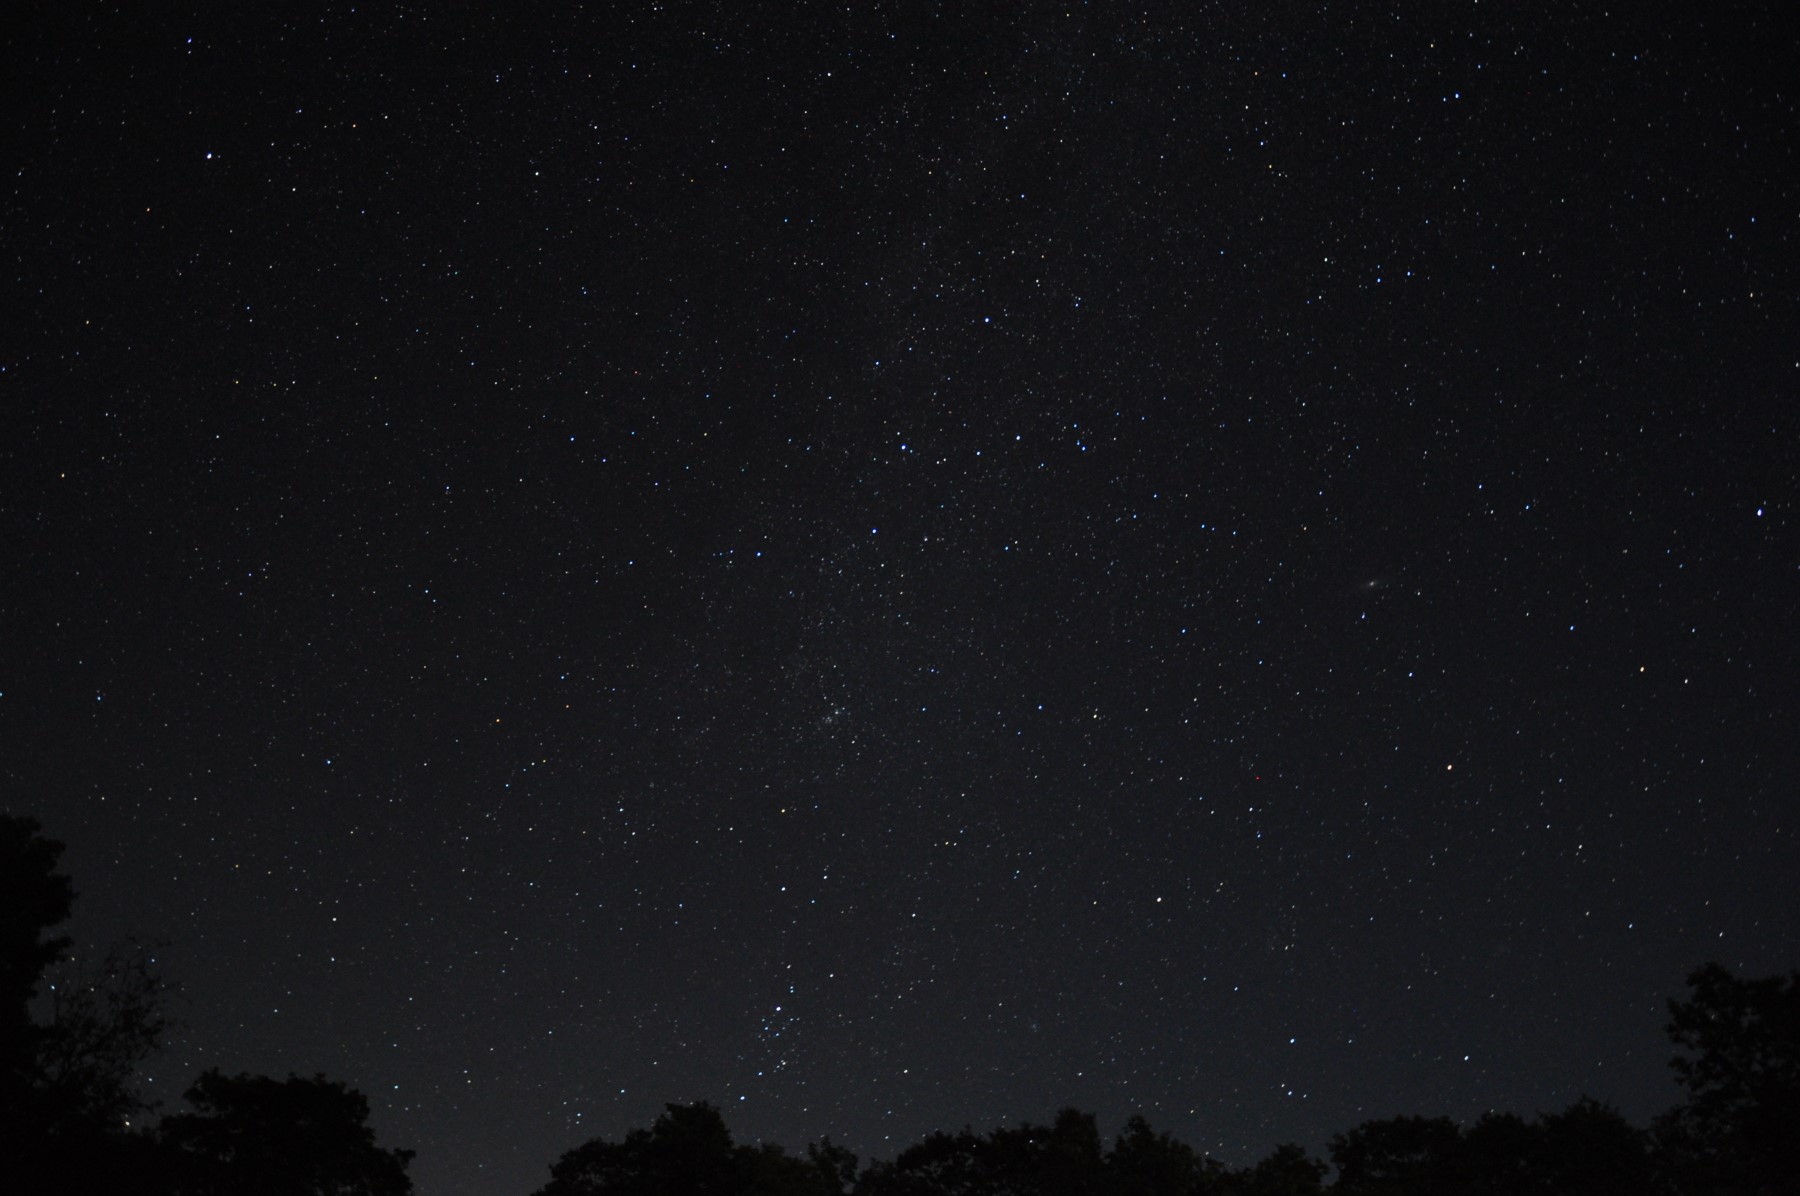 Un ciel sombre rempli d'étoiles. Il y a une petite limite forestière au bas de l'image.